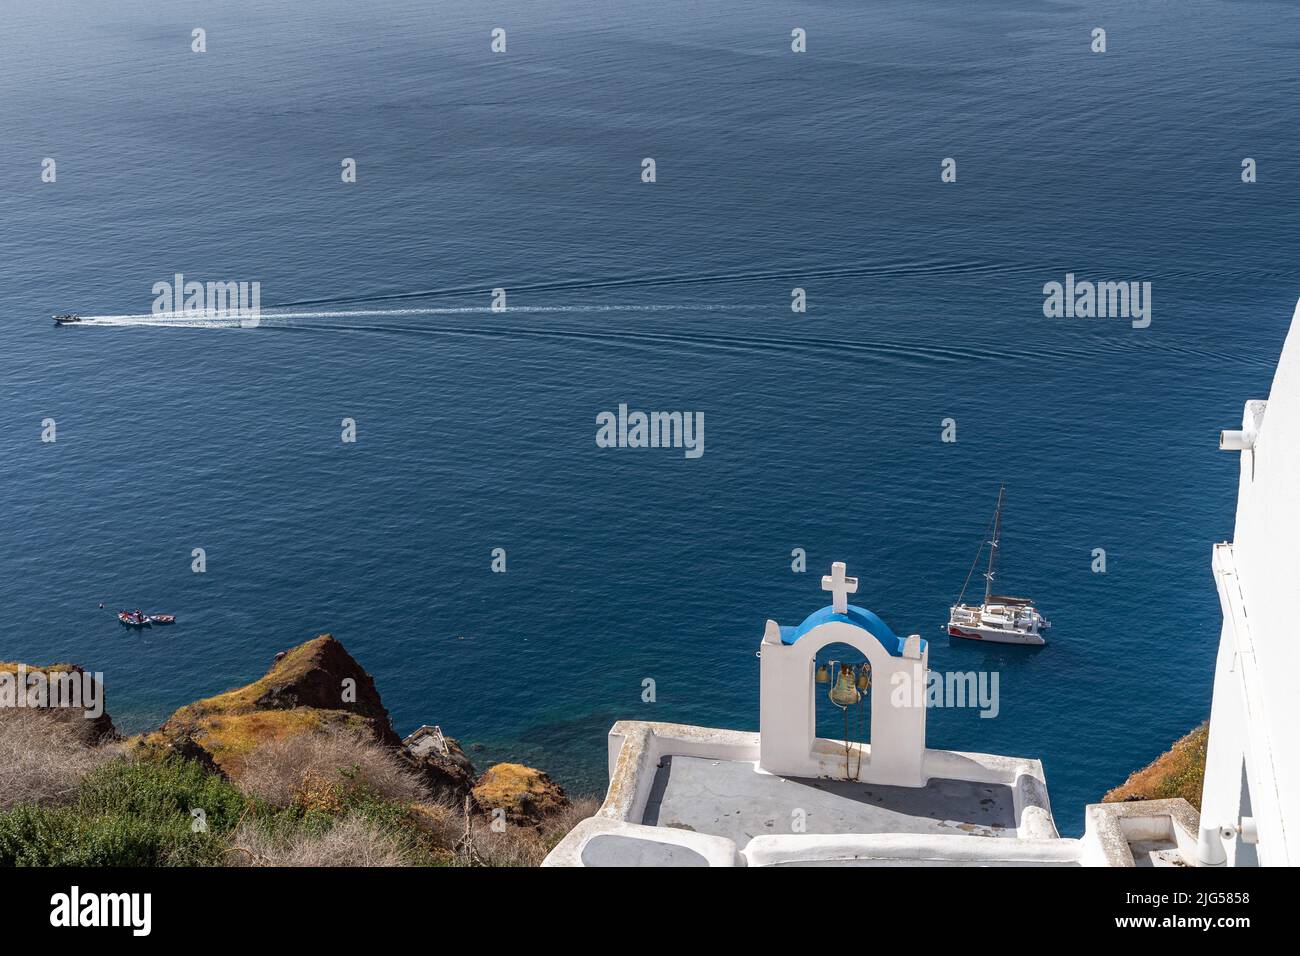 Tipica chiesa di Oia con vista sul Mar Mediterraneo, Santorini, Grecia Foto Stock